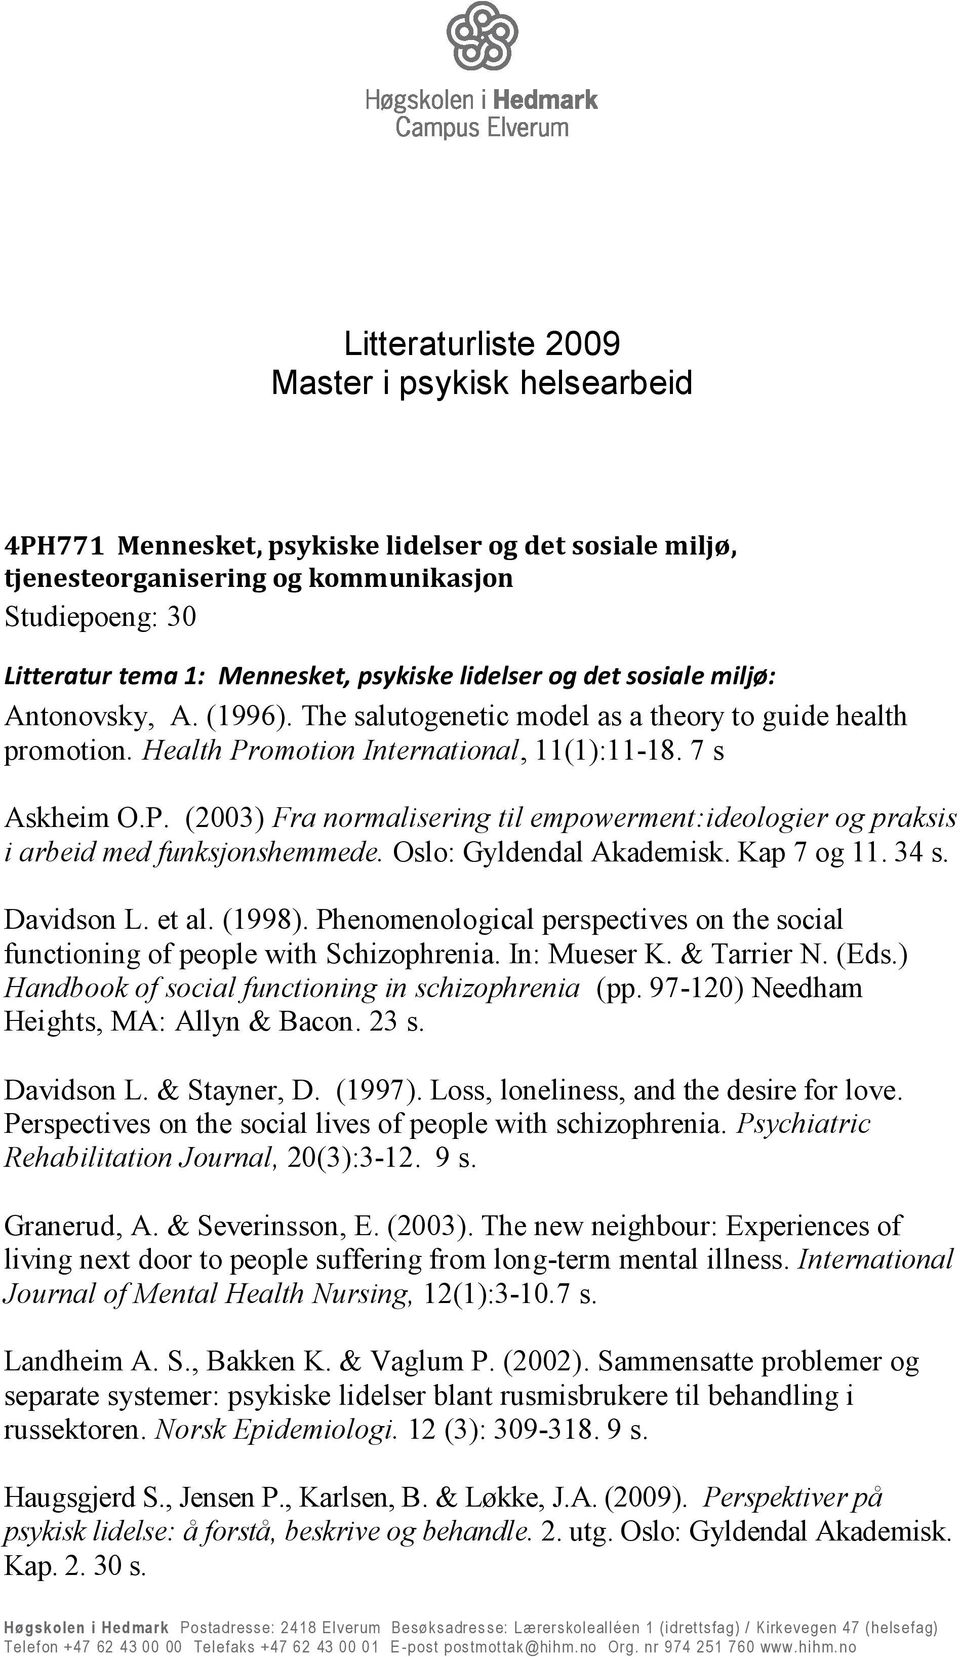 omotion International, 11(1):11-18. 7 s Askheim O.P. (2003) Fra normalisering til empowerment:ideologier og praksis i arbeid med funksjonshemmede. Oslo: Gyldendal Akademisk. Kap 7 og 11. 34 s.